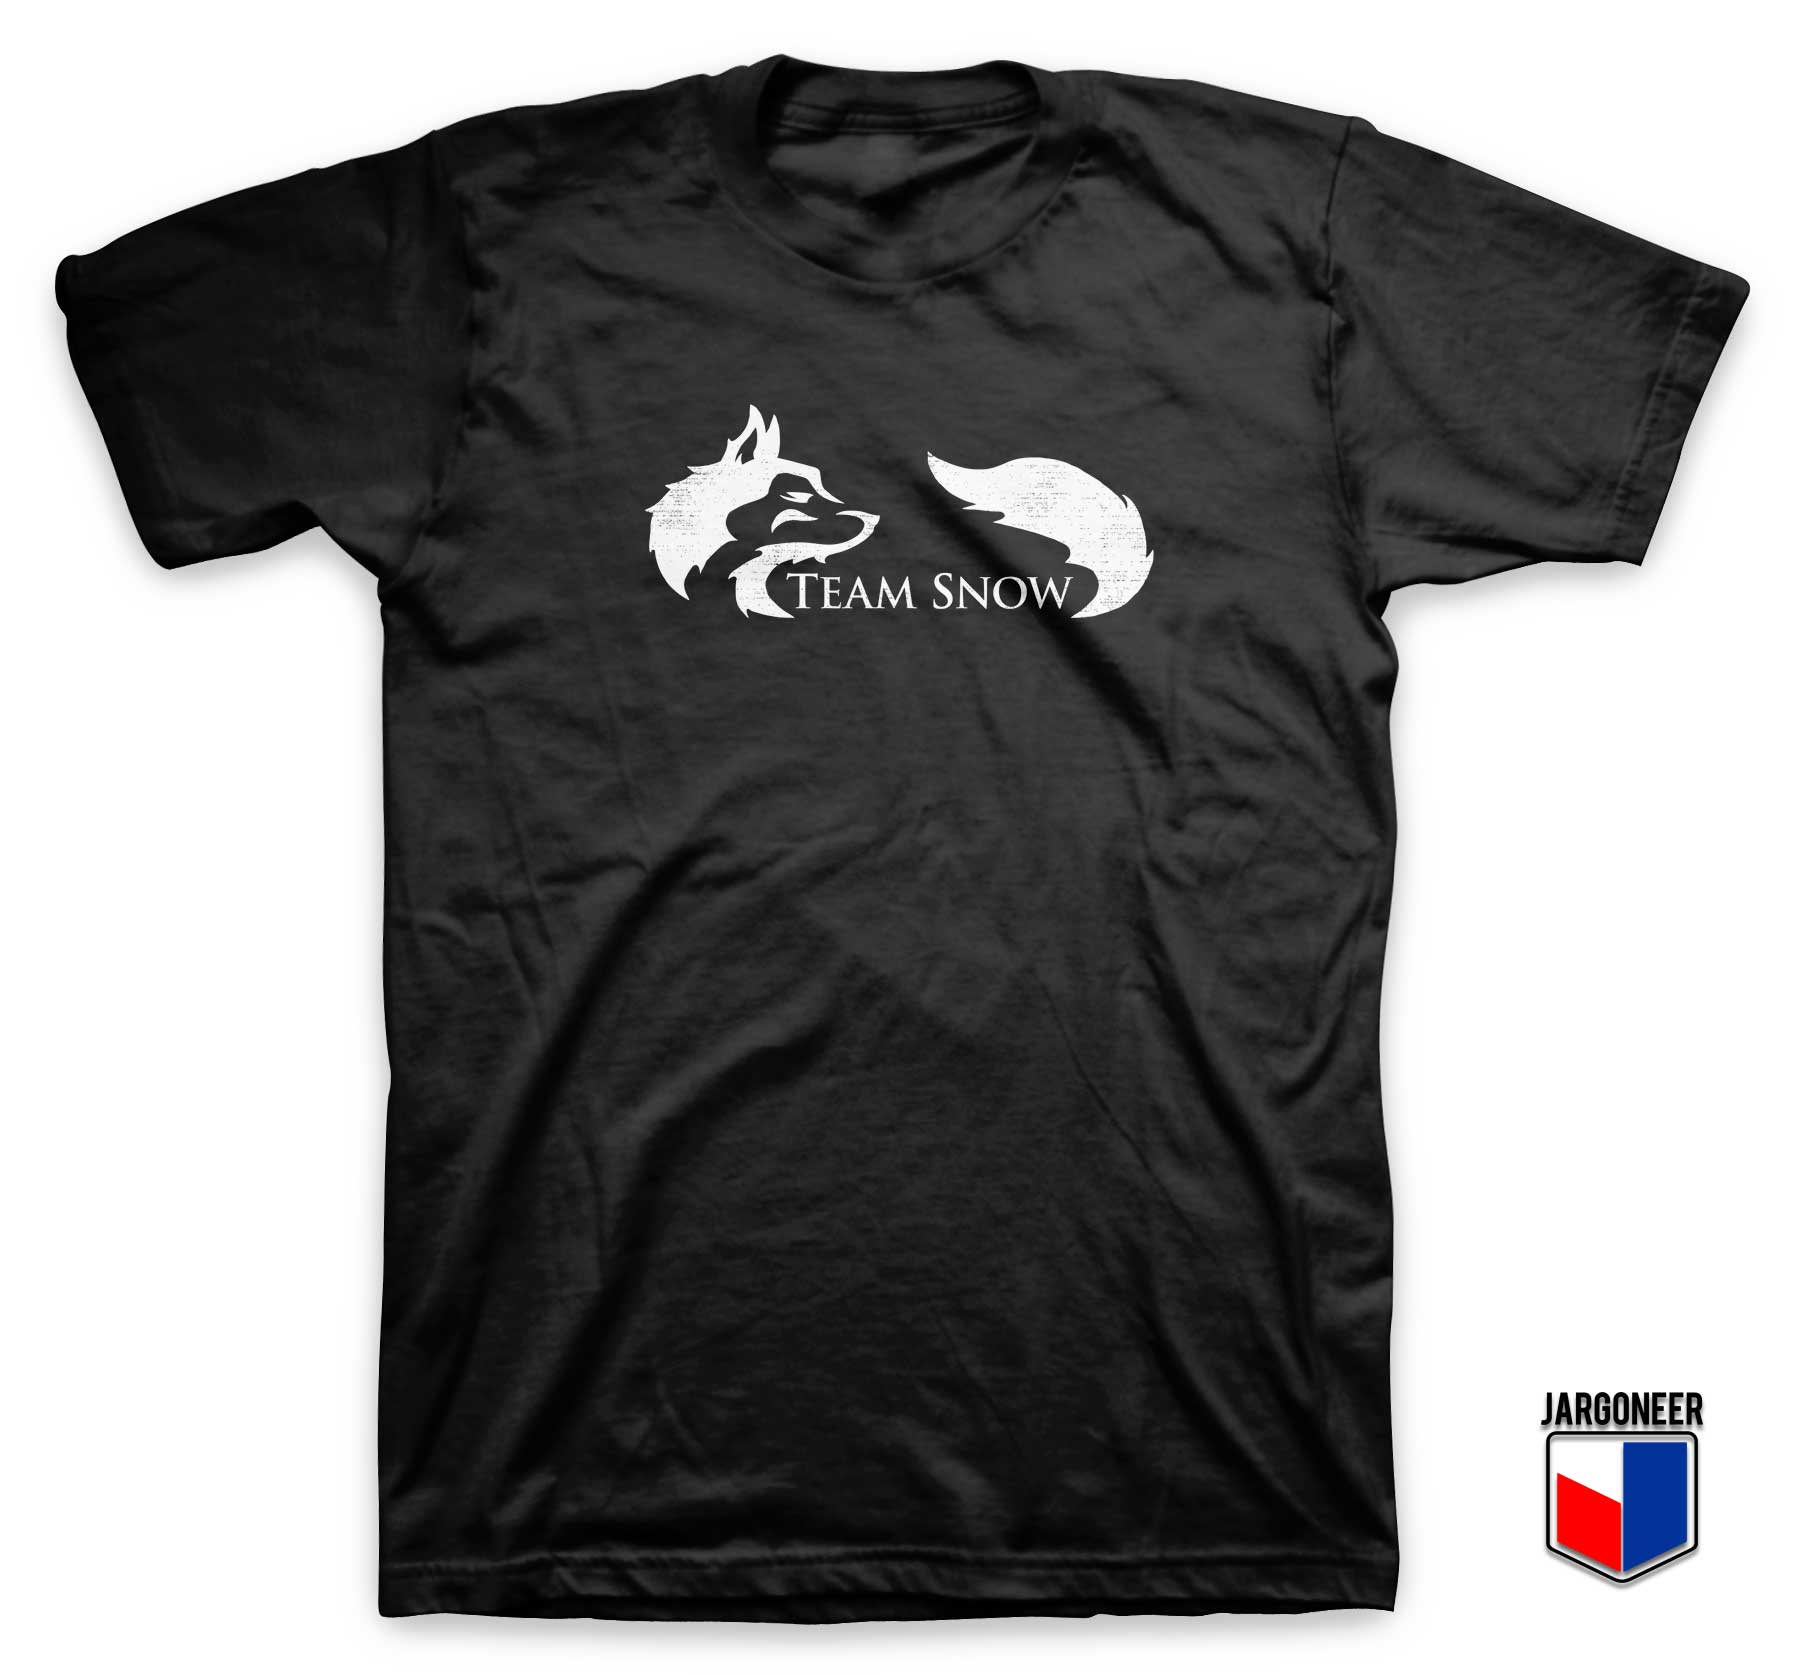 Team Snow Logo T Shirt - Shop Unique Graphic Cool Shirt Designs